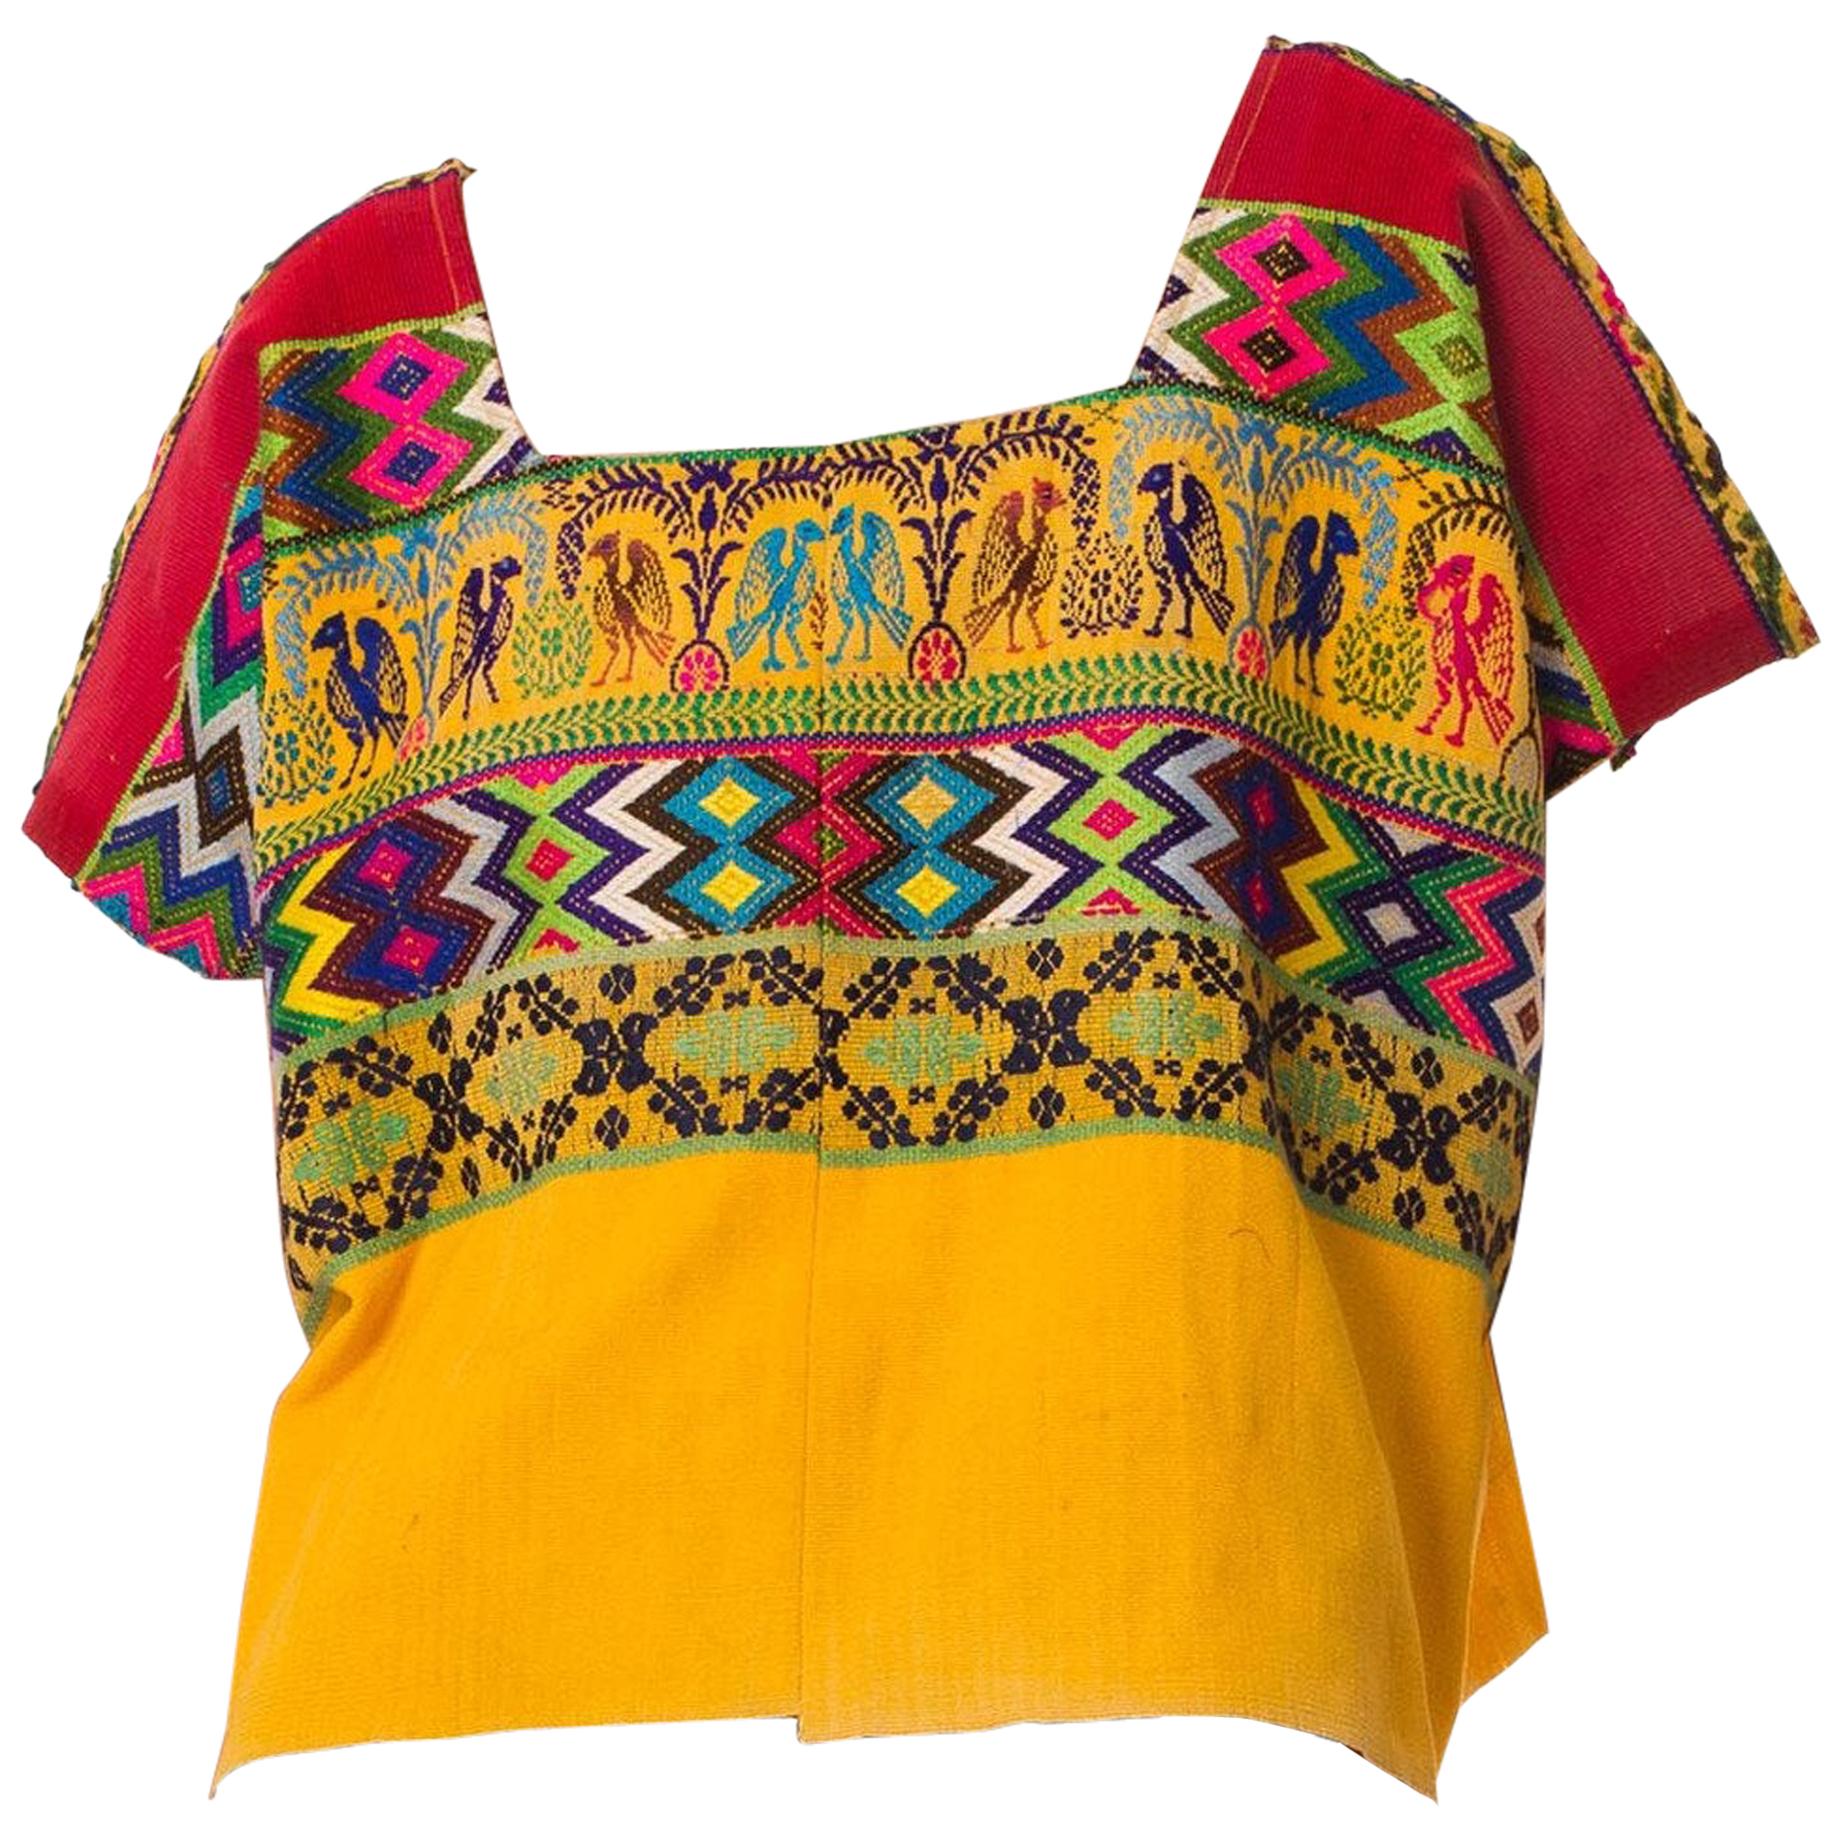 Rotes & gelbes Baumwolltop aus den 1970er Jahren mit geometrischer ethnischer Handstickerei